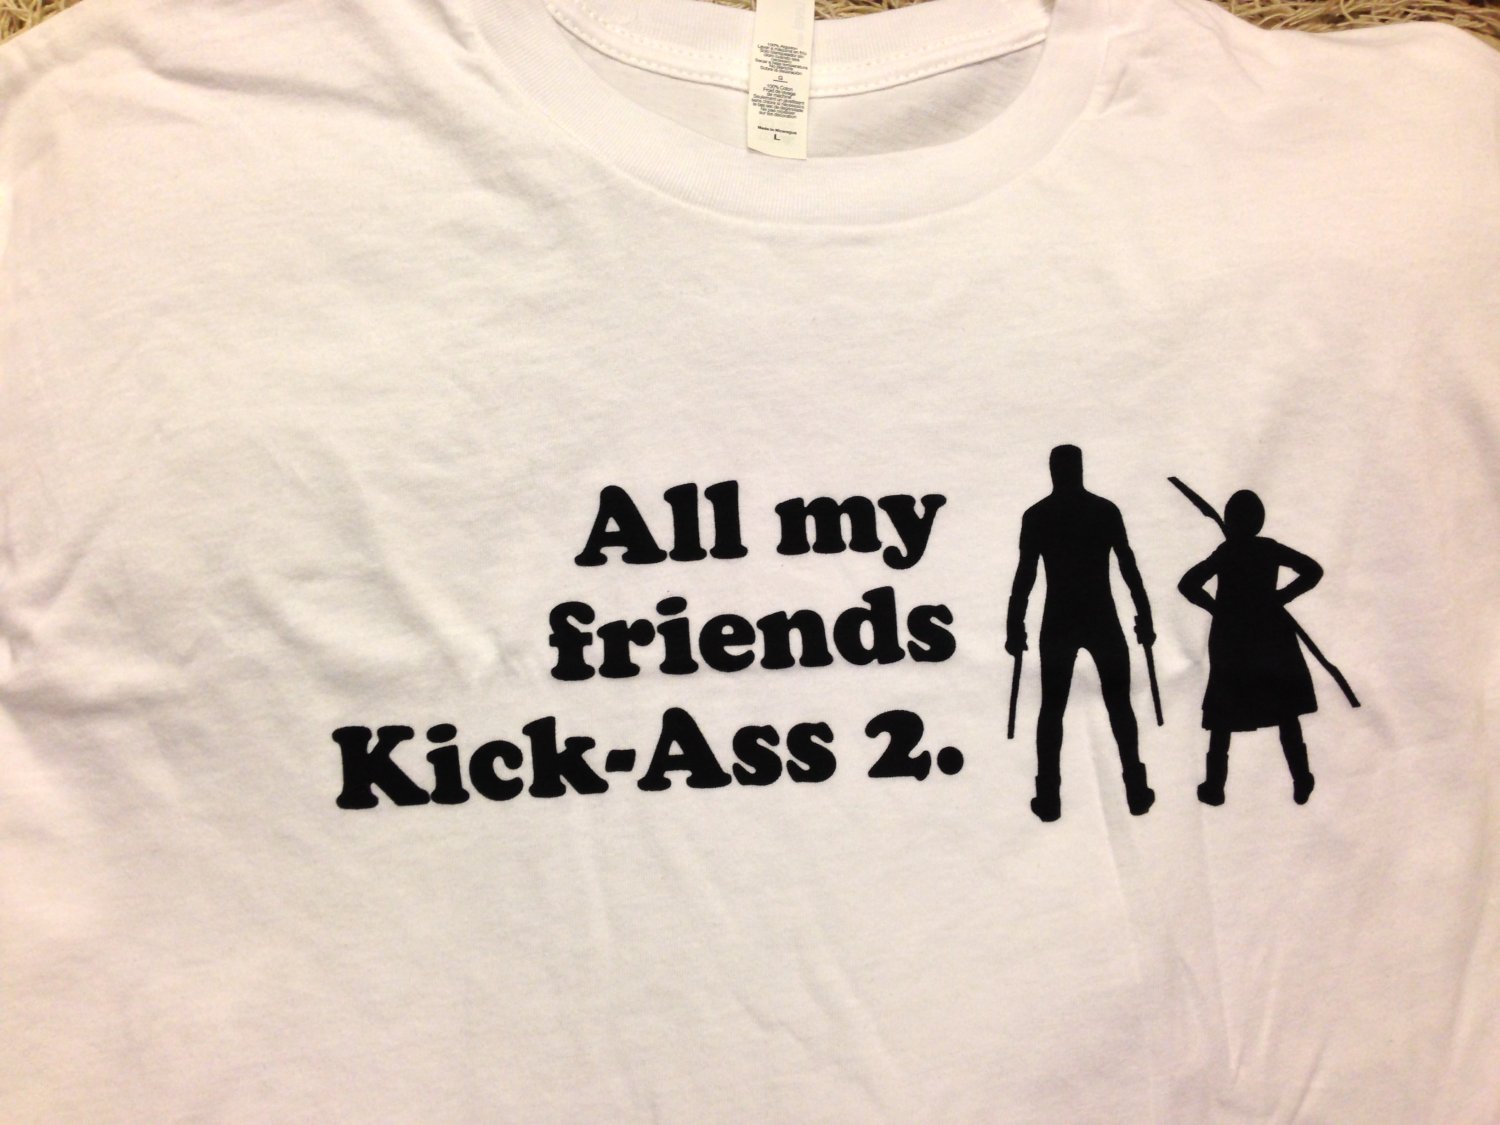 SDCC 2013 Exclusive Kick-Ass 2 T-Shirt - Large